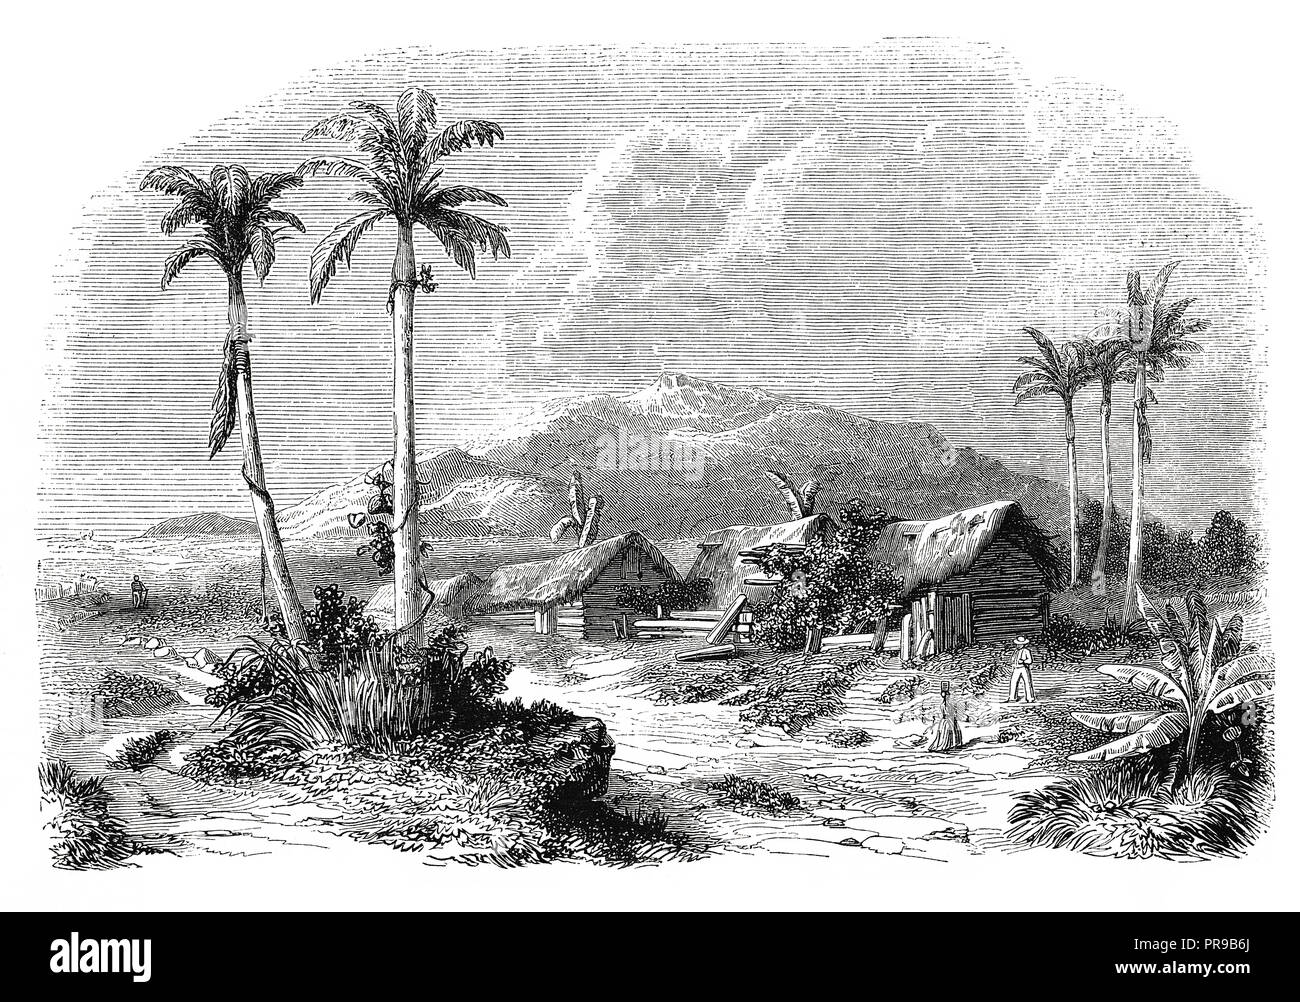 Xix secolo illustrazione del paesaggio della Guadalupa, da Fontenay. Illustrazione originale pubblicato in Le magasin pittoresco da M. A. Lachevardiere, Pari Foto Stock